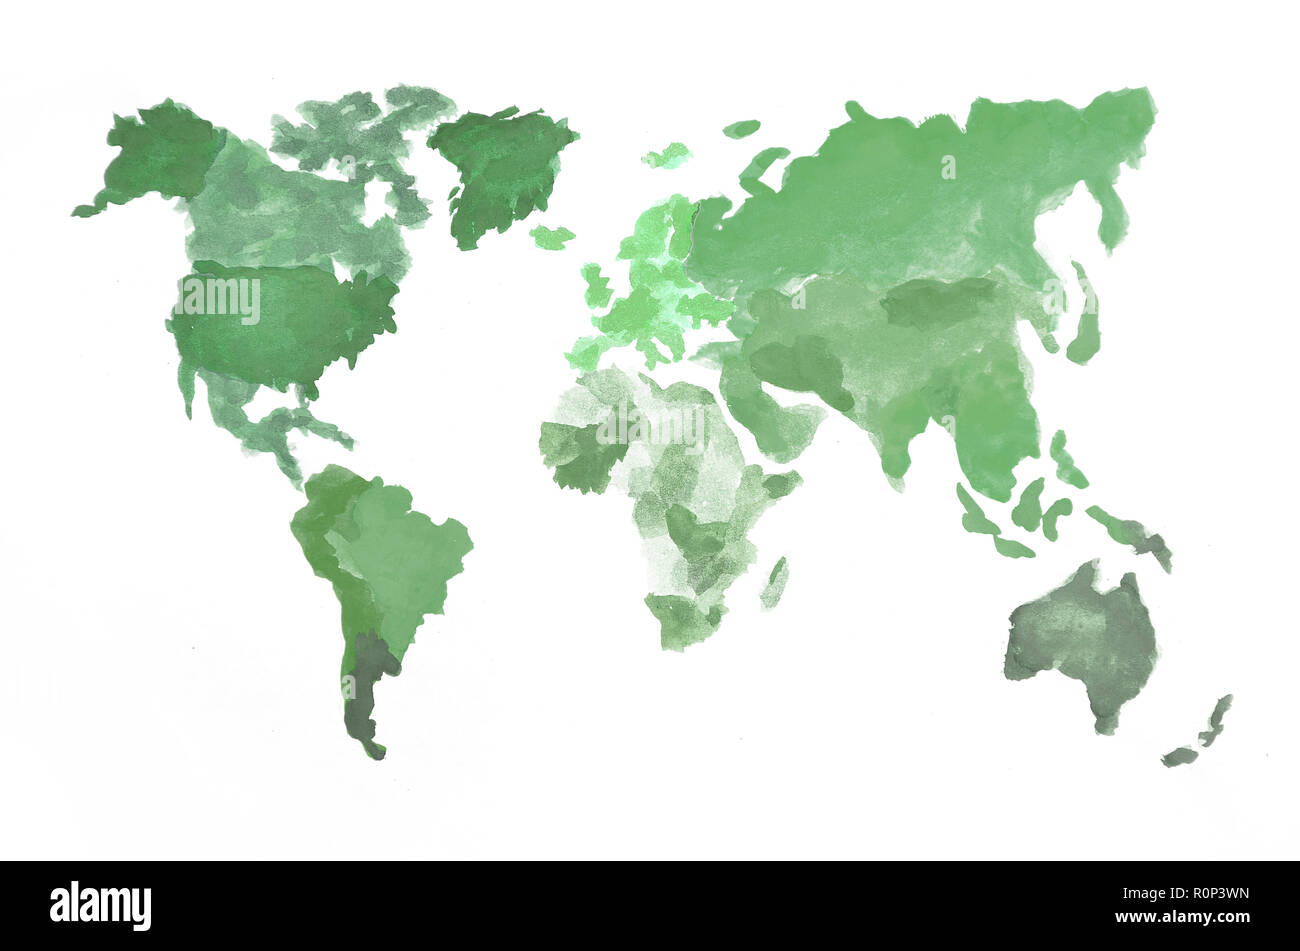 La carte du monde est fait de peintures de camouflage sur du papier blanc. Tous les continents sont représentés dans le vert . Banque D'Images